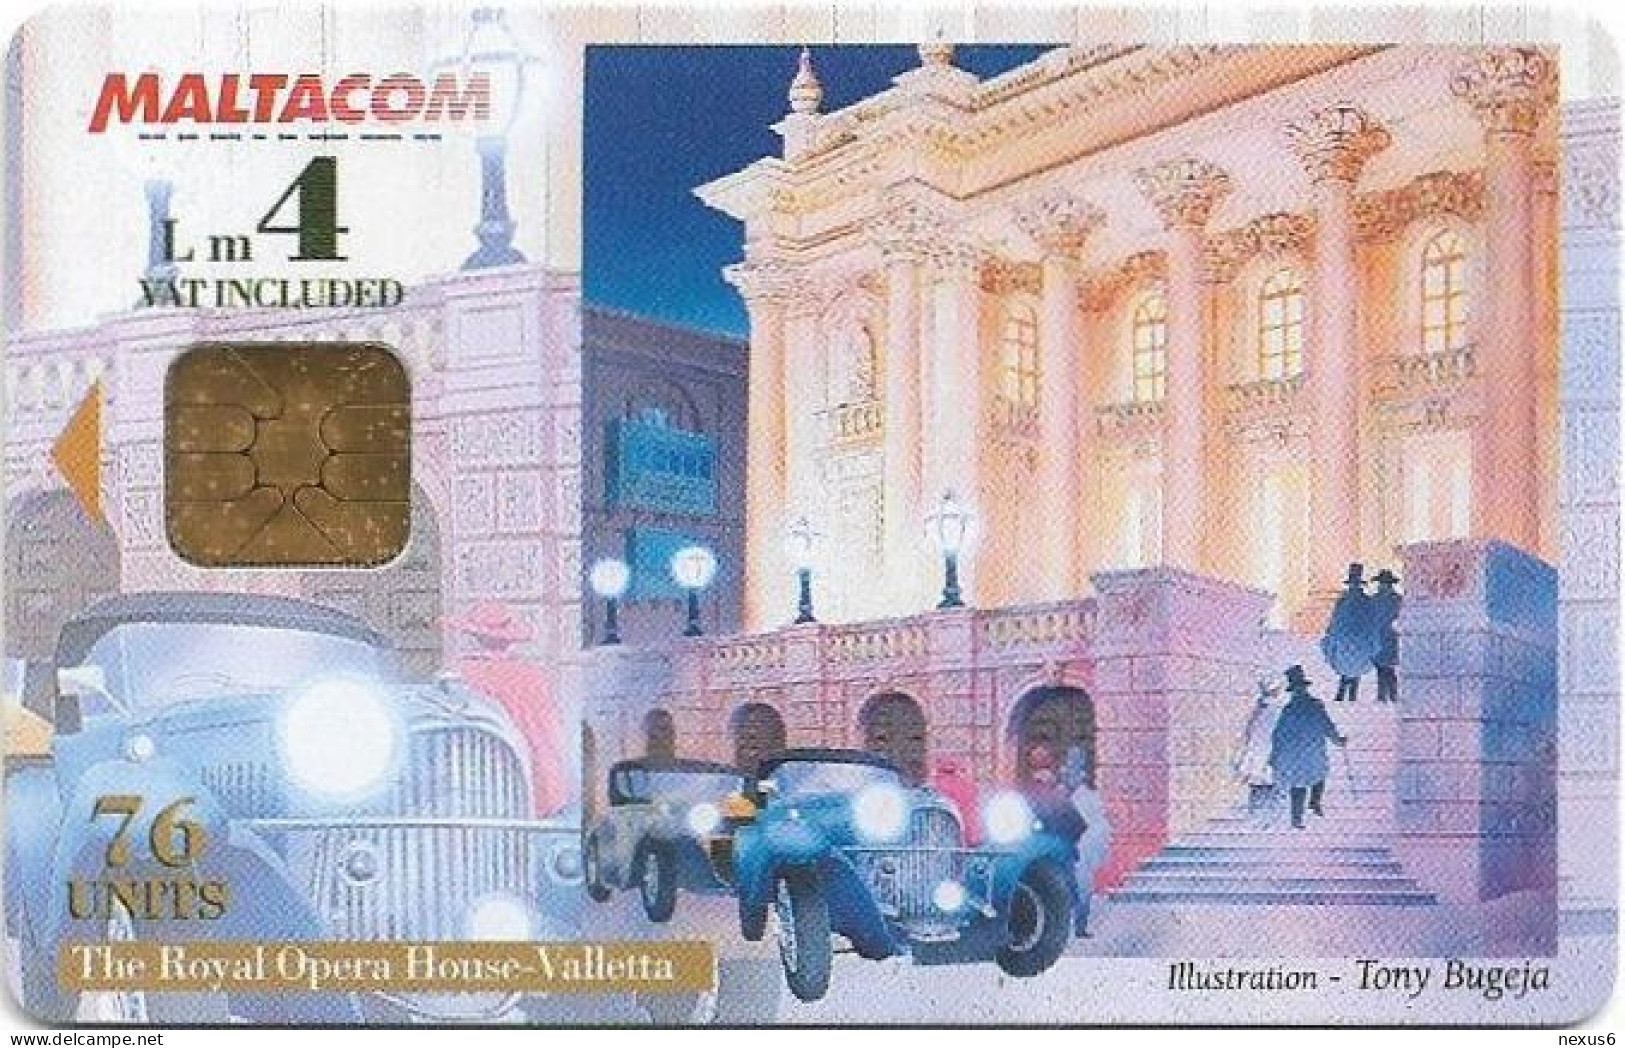 Malta - Maltacom - Royal Opera House, 11.2000, 76U, 15.000ex, Used - Malta